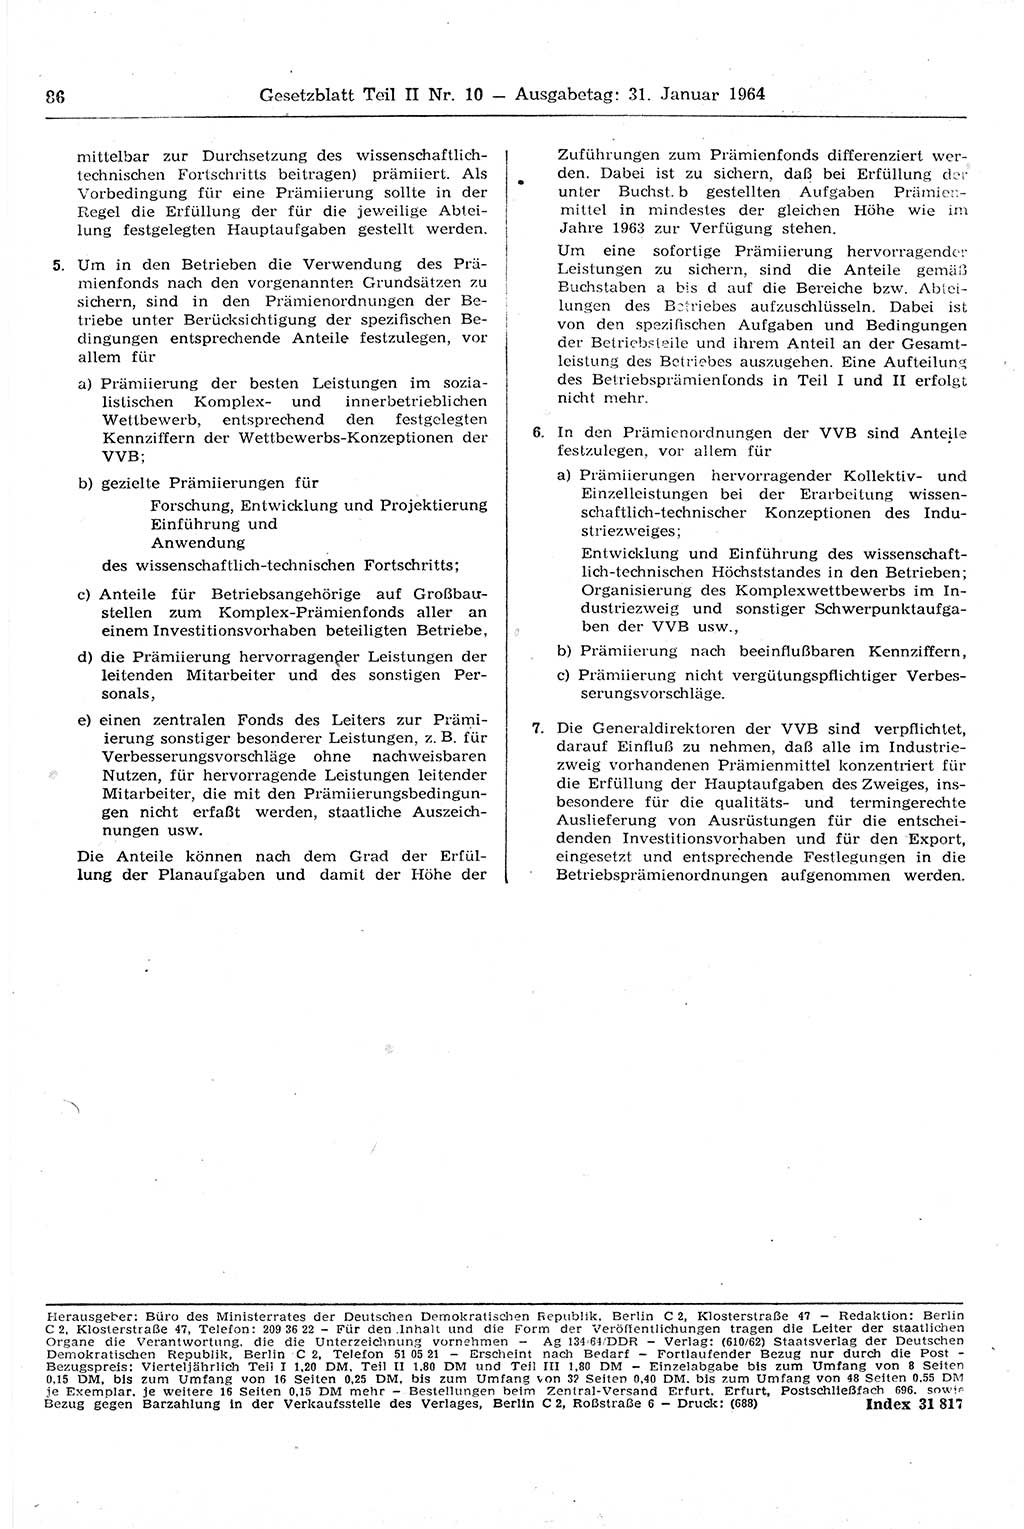 Gesetzblatt (GBl.) der Deutschen Demokratischen Republik (DDR) Teil ⅠⅠ 1964, Seite 86 (GBl. DDR ⅠⅠ 1964, S. 86)